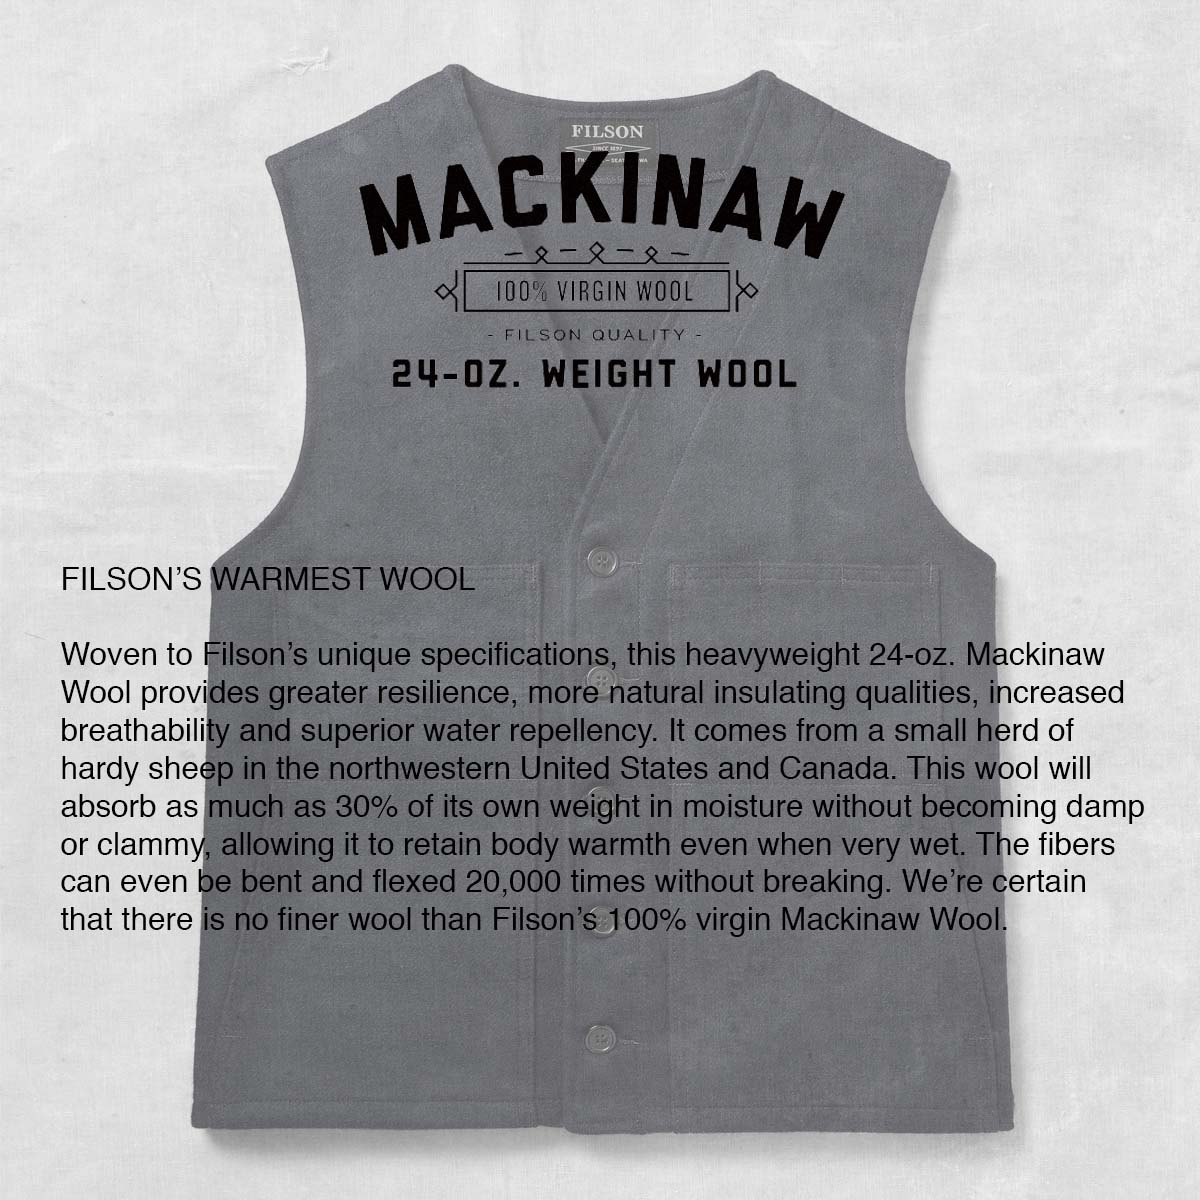 Filson Mackinaw Wool Vest Liner, Made of 100% virgin Mackinaw Wool, verhaart niet, pilt niet, kreukt niet, en ziet er dag in dag uit goed uit.